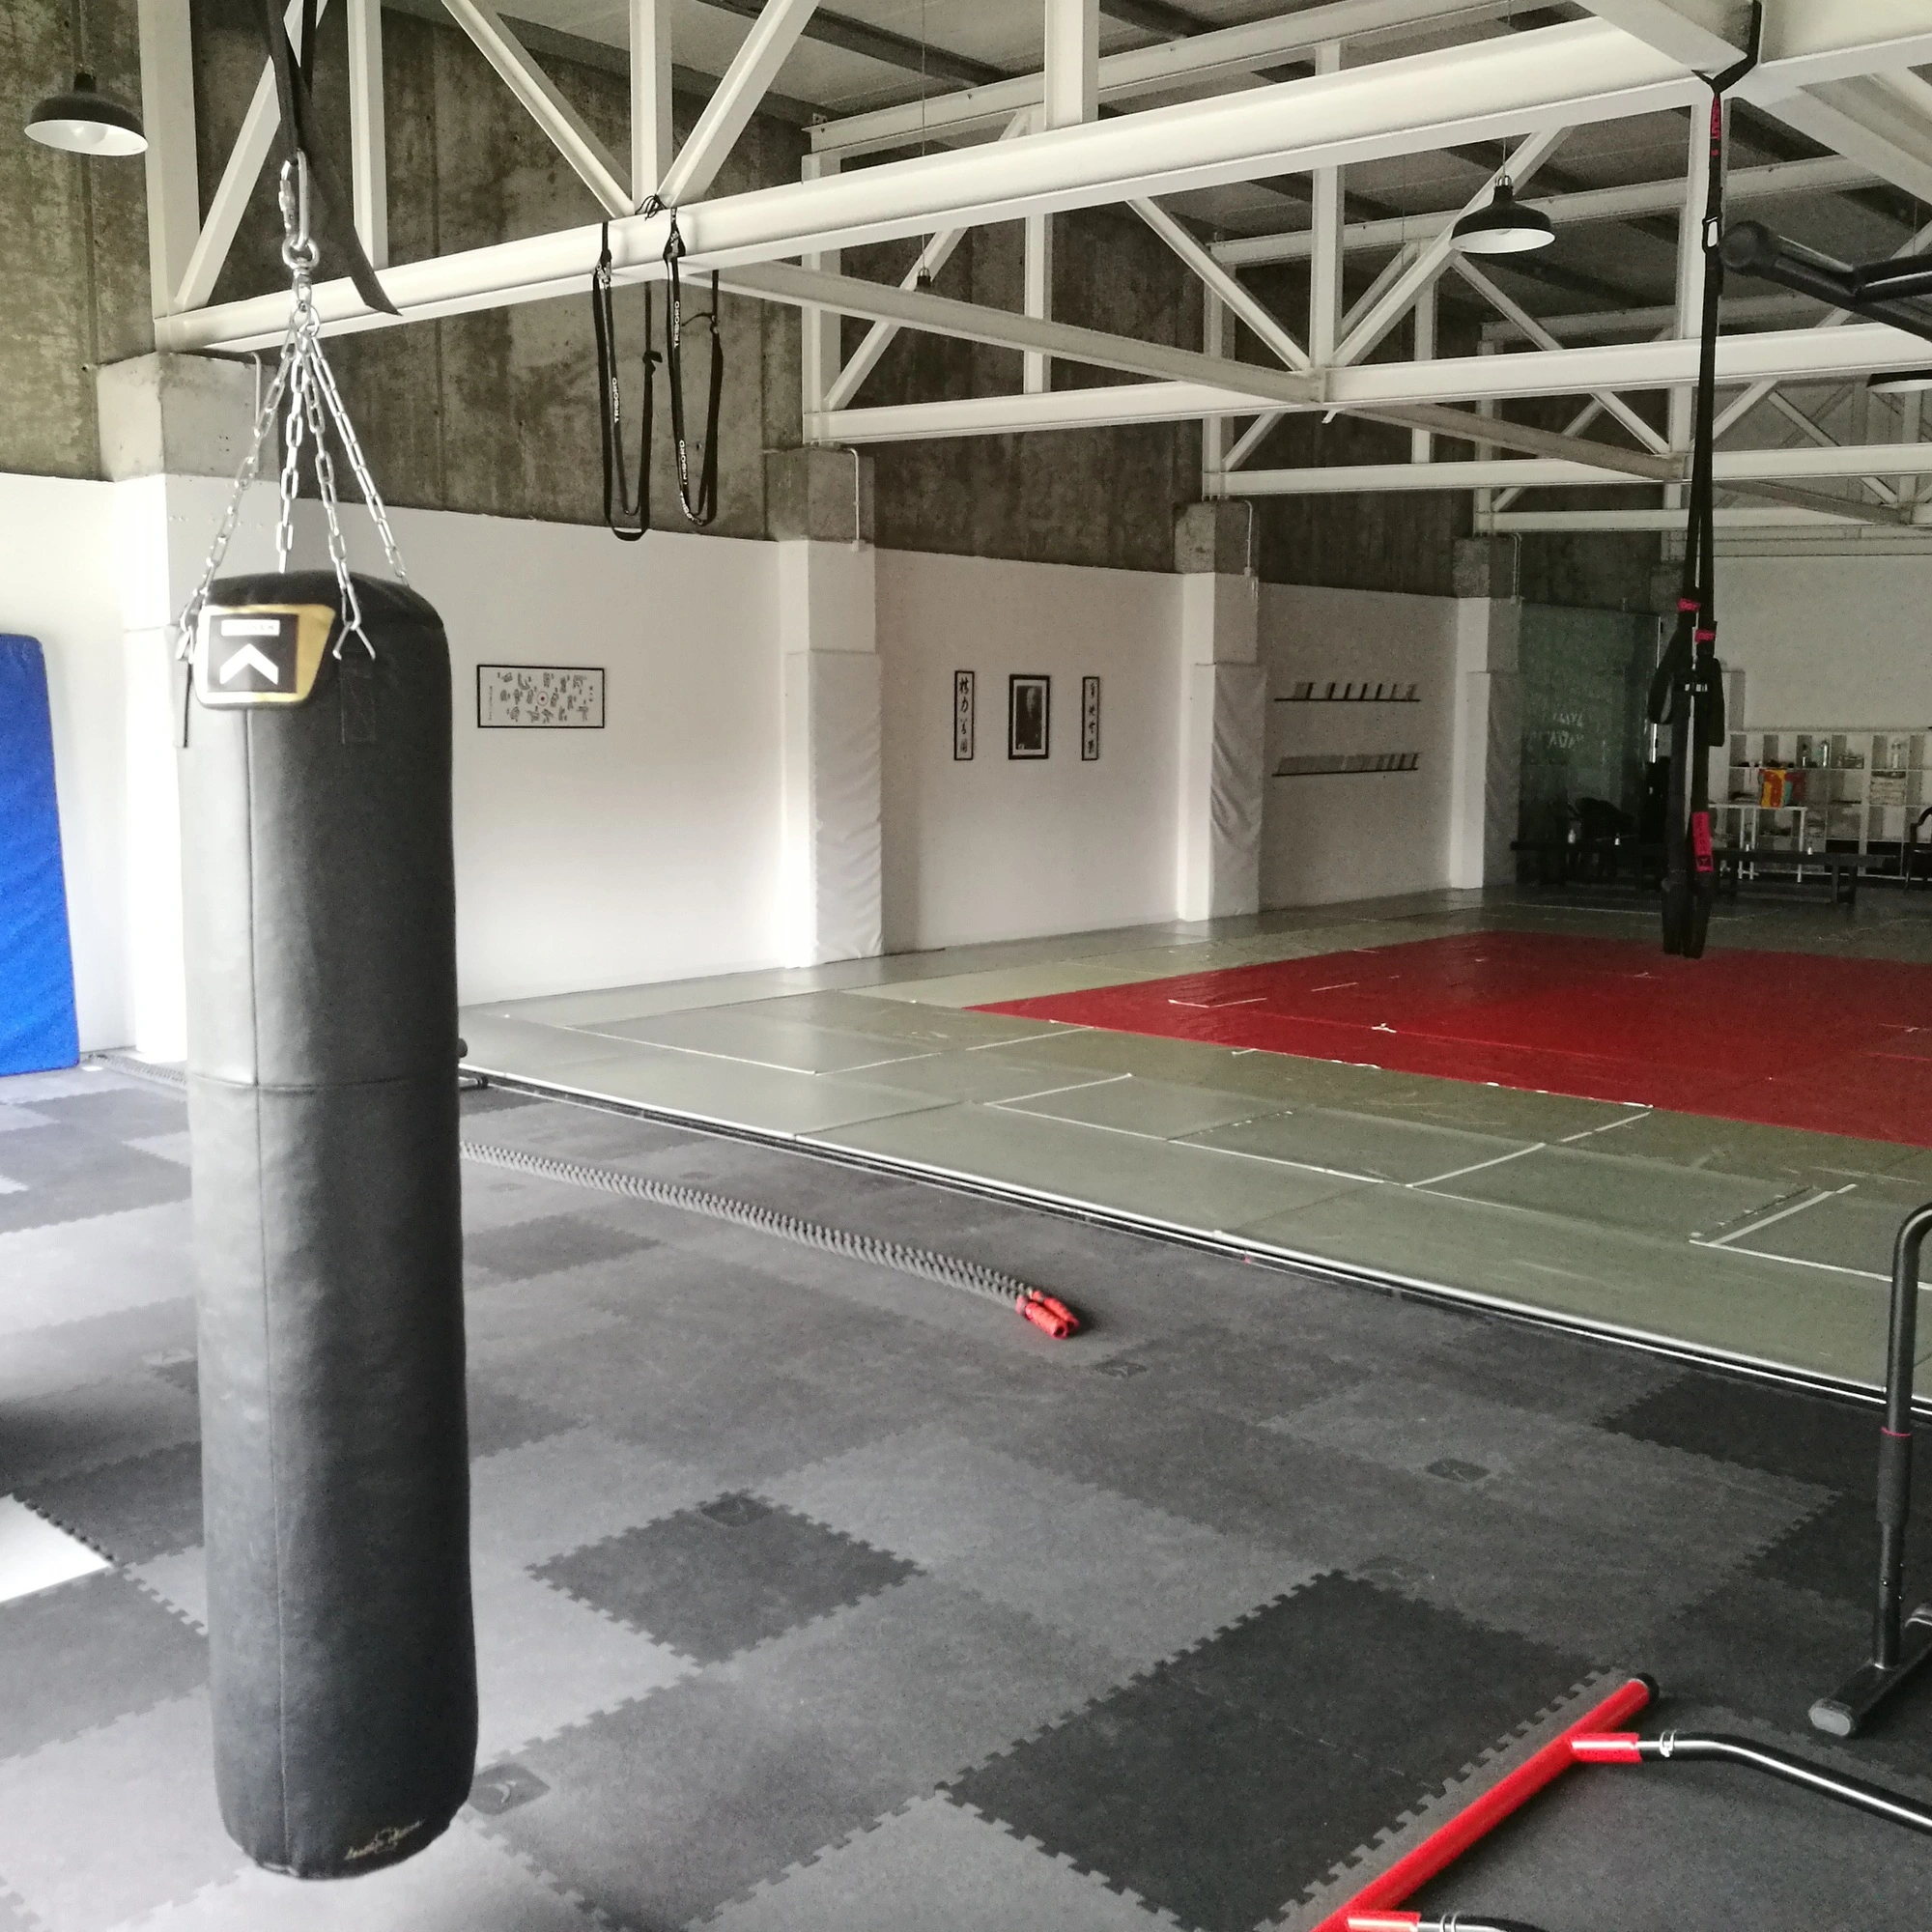 Judo no Porto